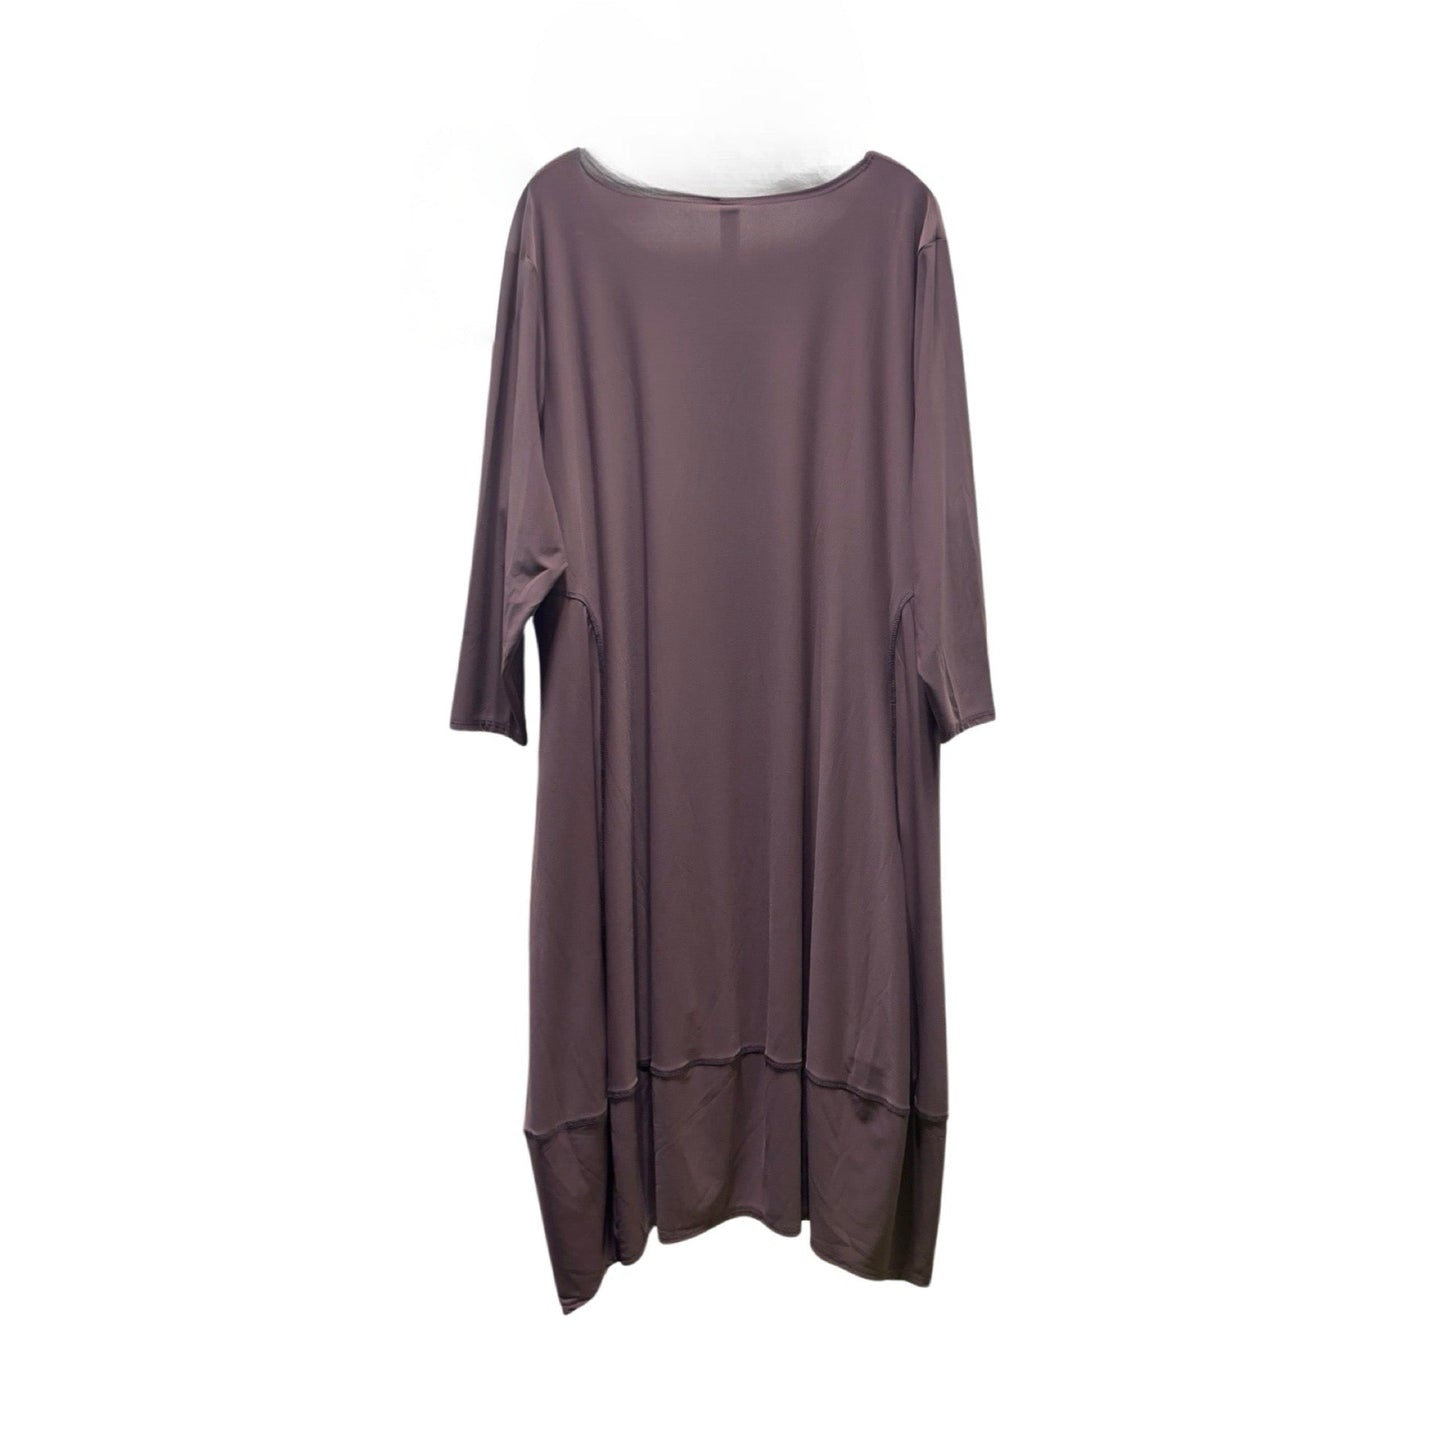 Dress Casual Midi By Marla Wynne  Size: 3x